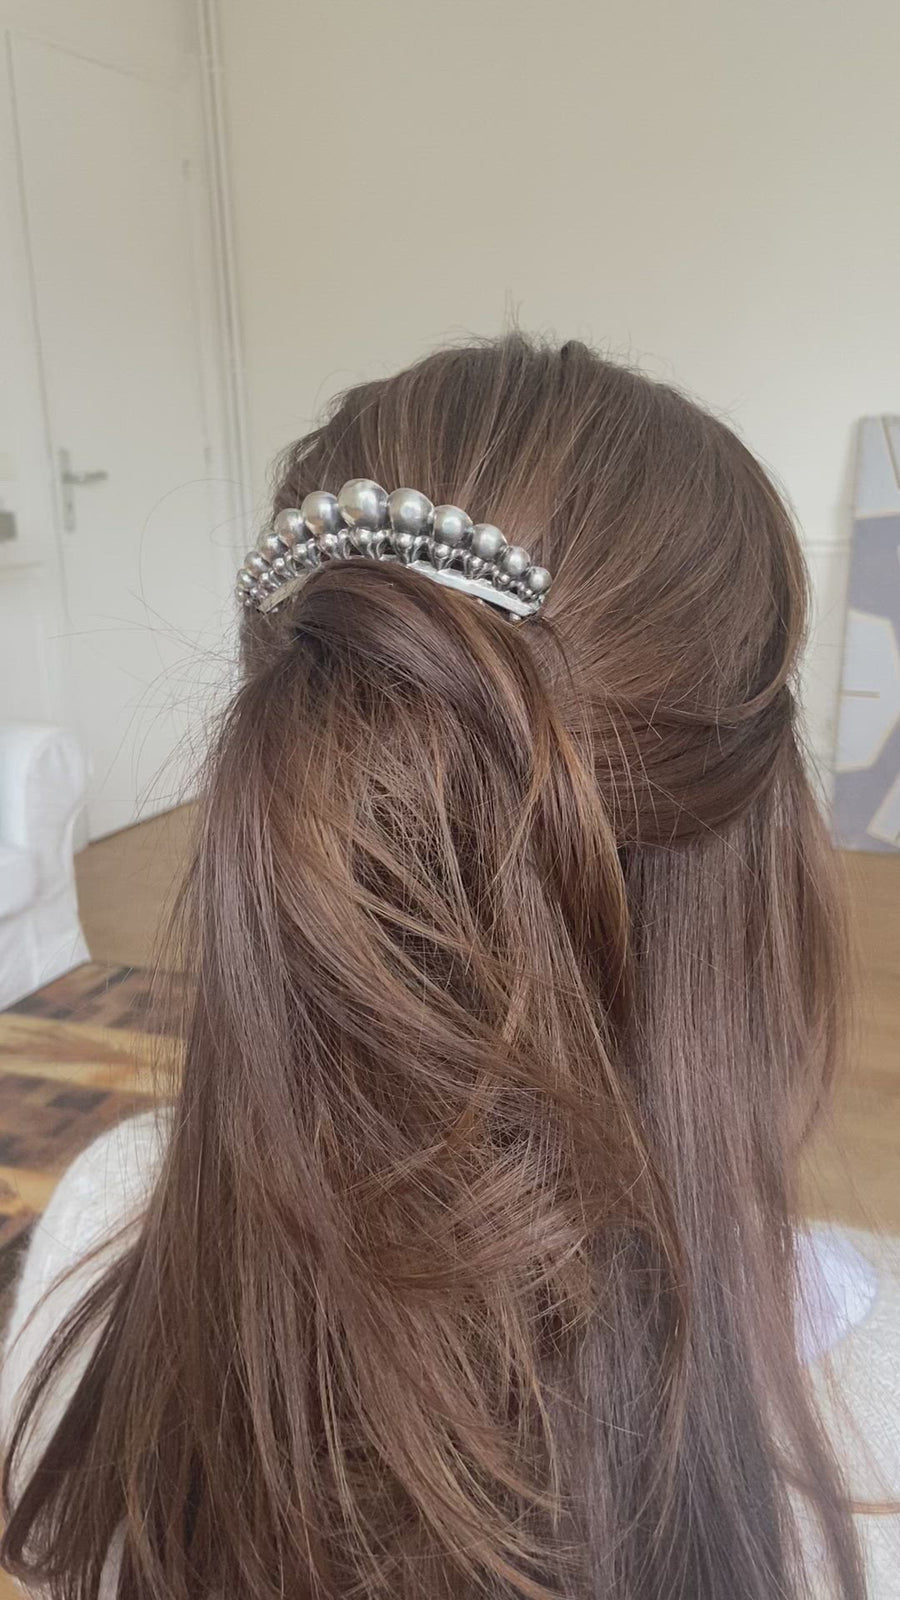 Antique hair comb, silver tiara